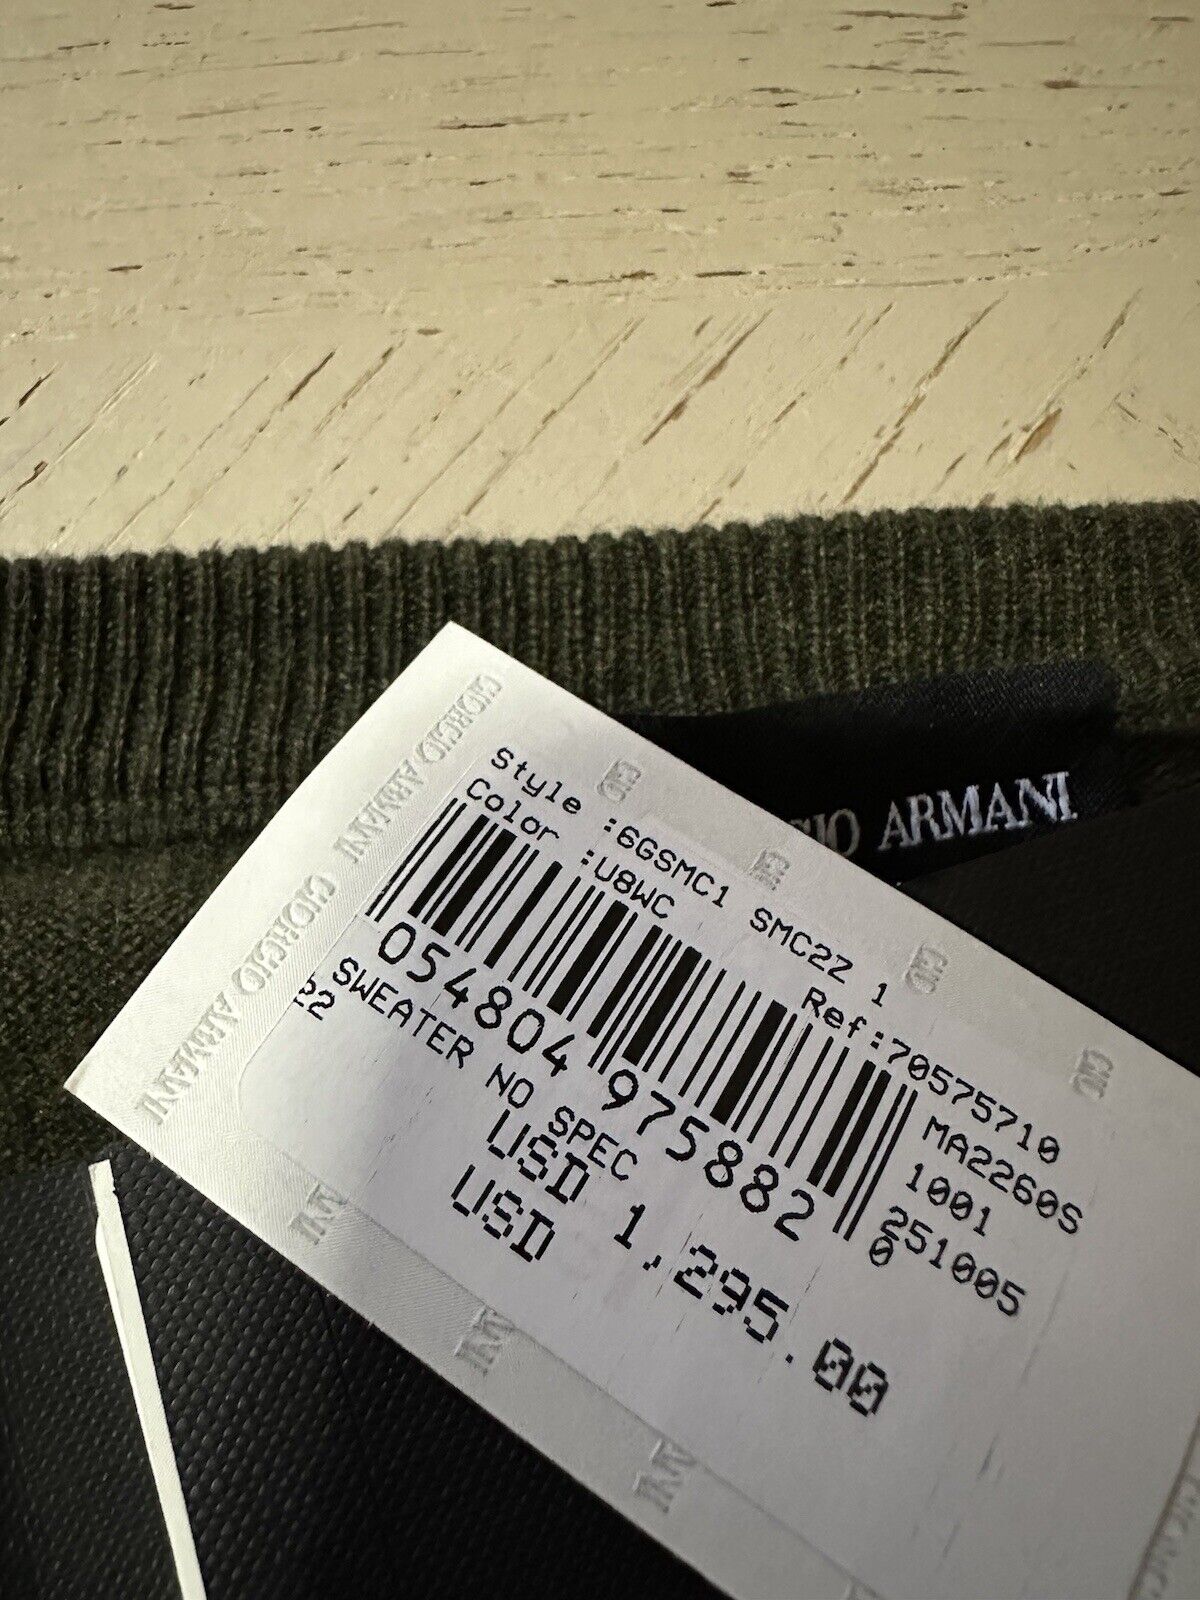 New $1295 Giorgio Armani Men Crewneck Cashmere Sweater Green 54 US ( XL ) Italy